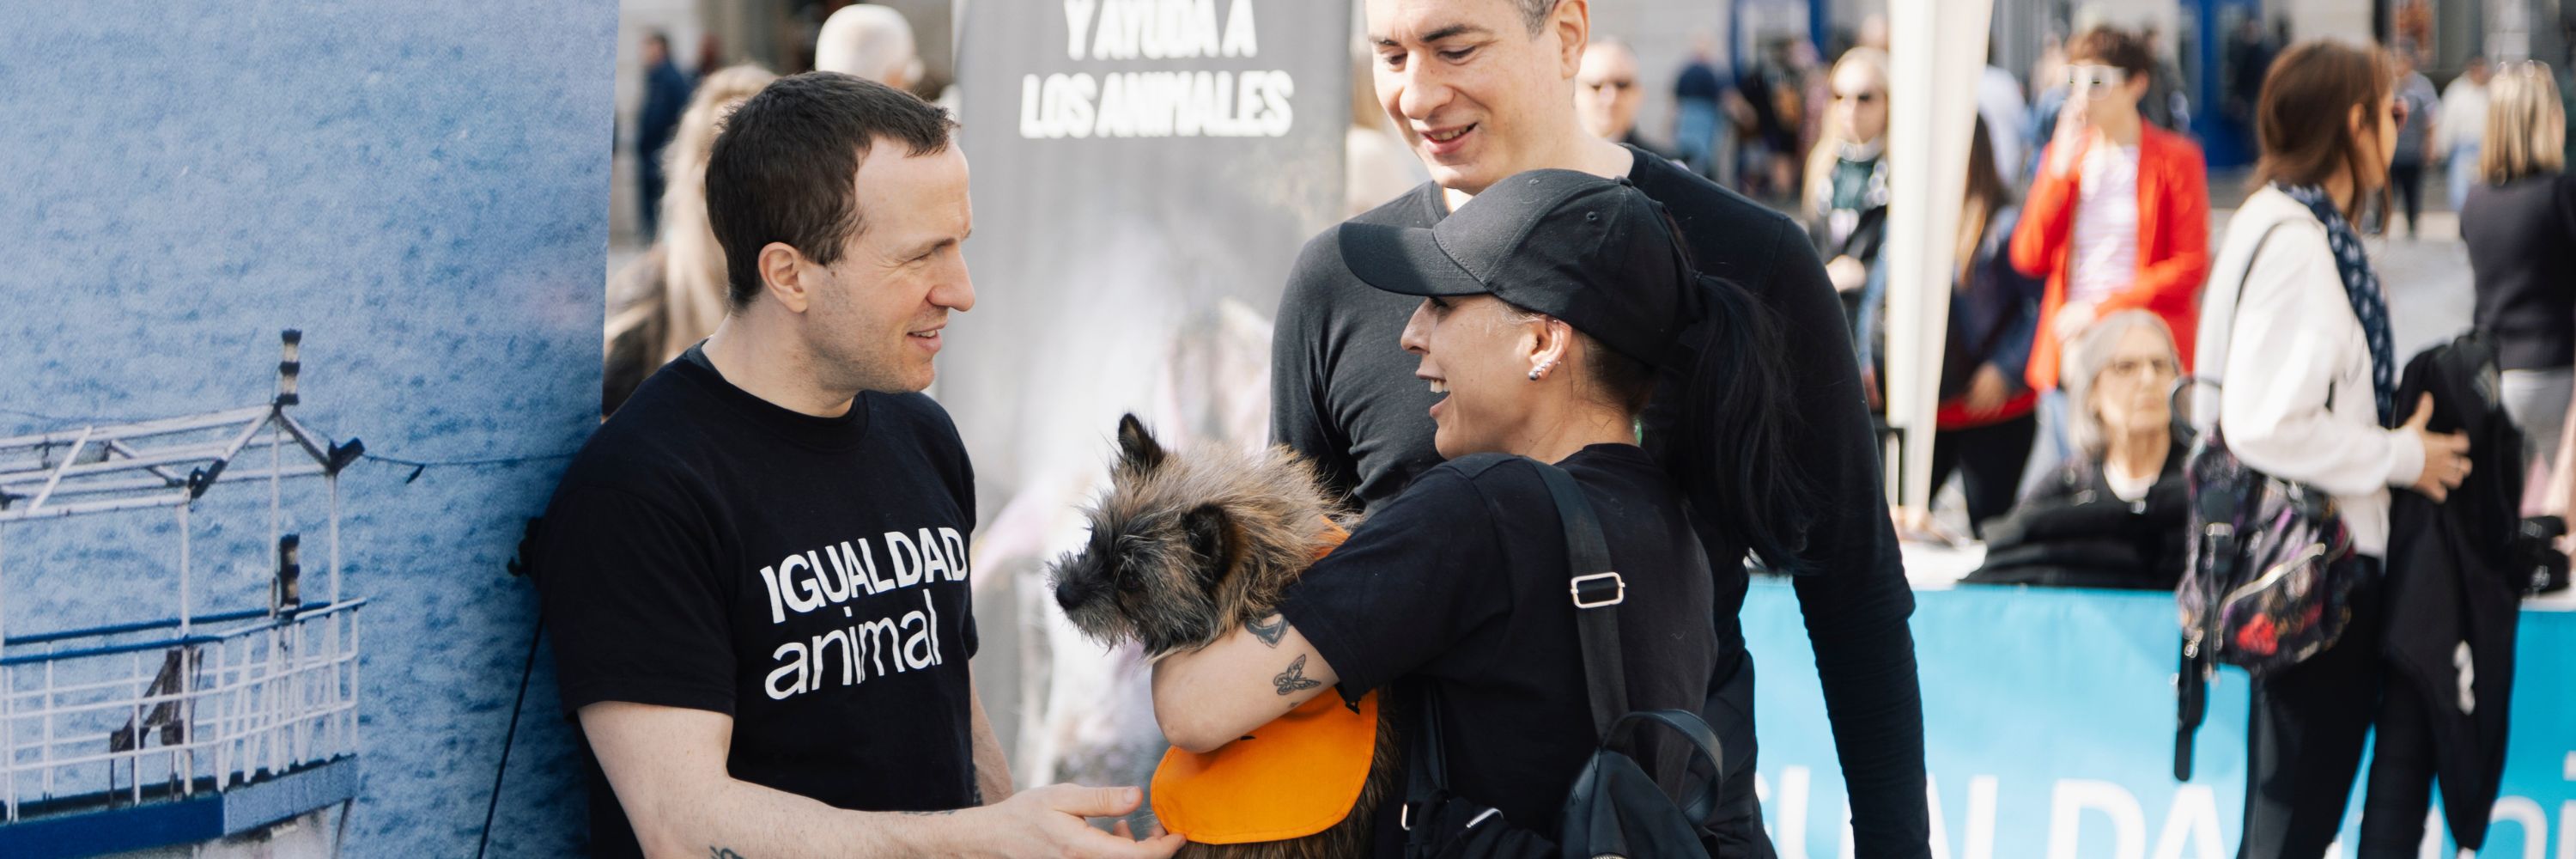 Voluntarios de Igualdad Animal durante una protesta por el fin de la exportación de animales vivos en la Puerta del Sol de Madrid.